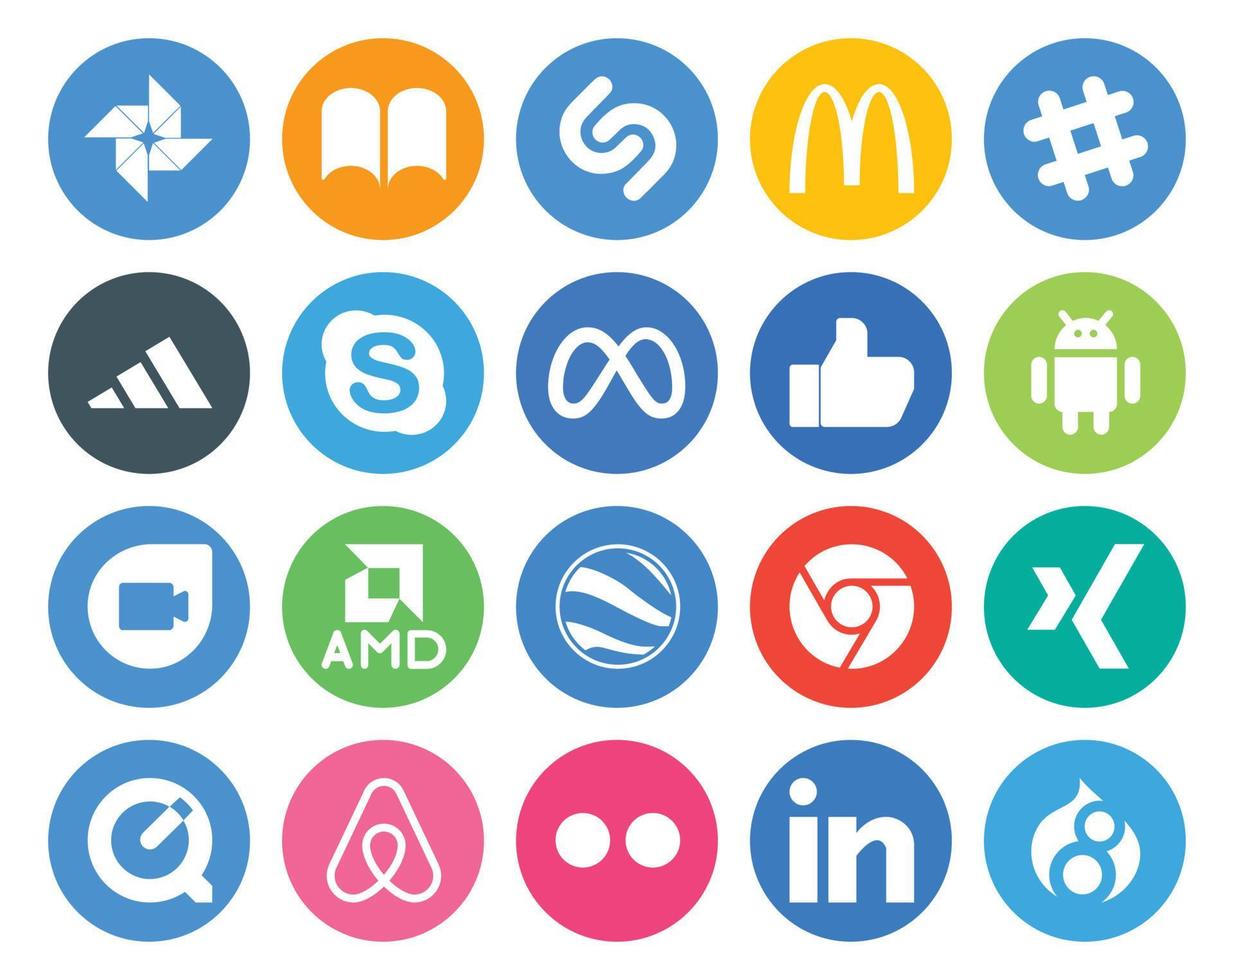 20 paquetes de íconos de redes sociales que incluyen xing google earth chat amd android vector